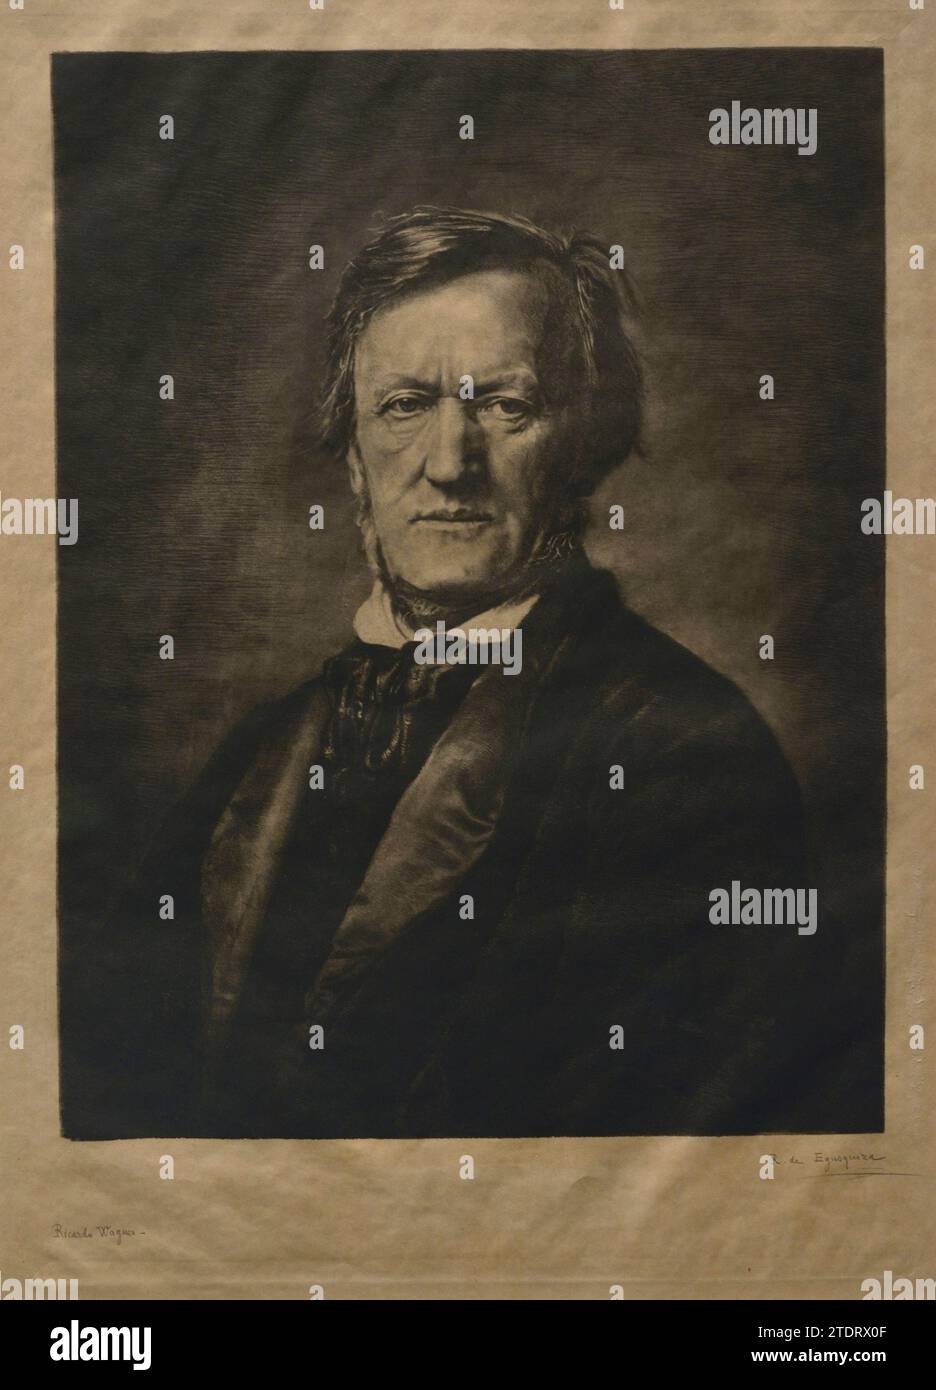 Richard Wagner (1813-1883). Deutscher Komponist. Porträt von Rogelio de Egusquiza (1845-1915), 1882. Ätzen auf Papier, 550 x 385 mm. Prado-Museum. Madrid. Spanien. Stockfoto